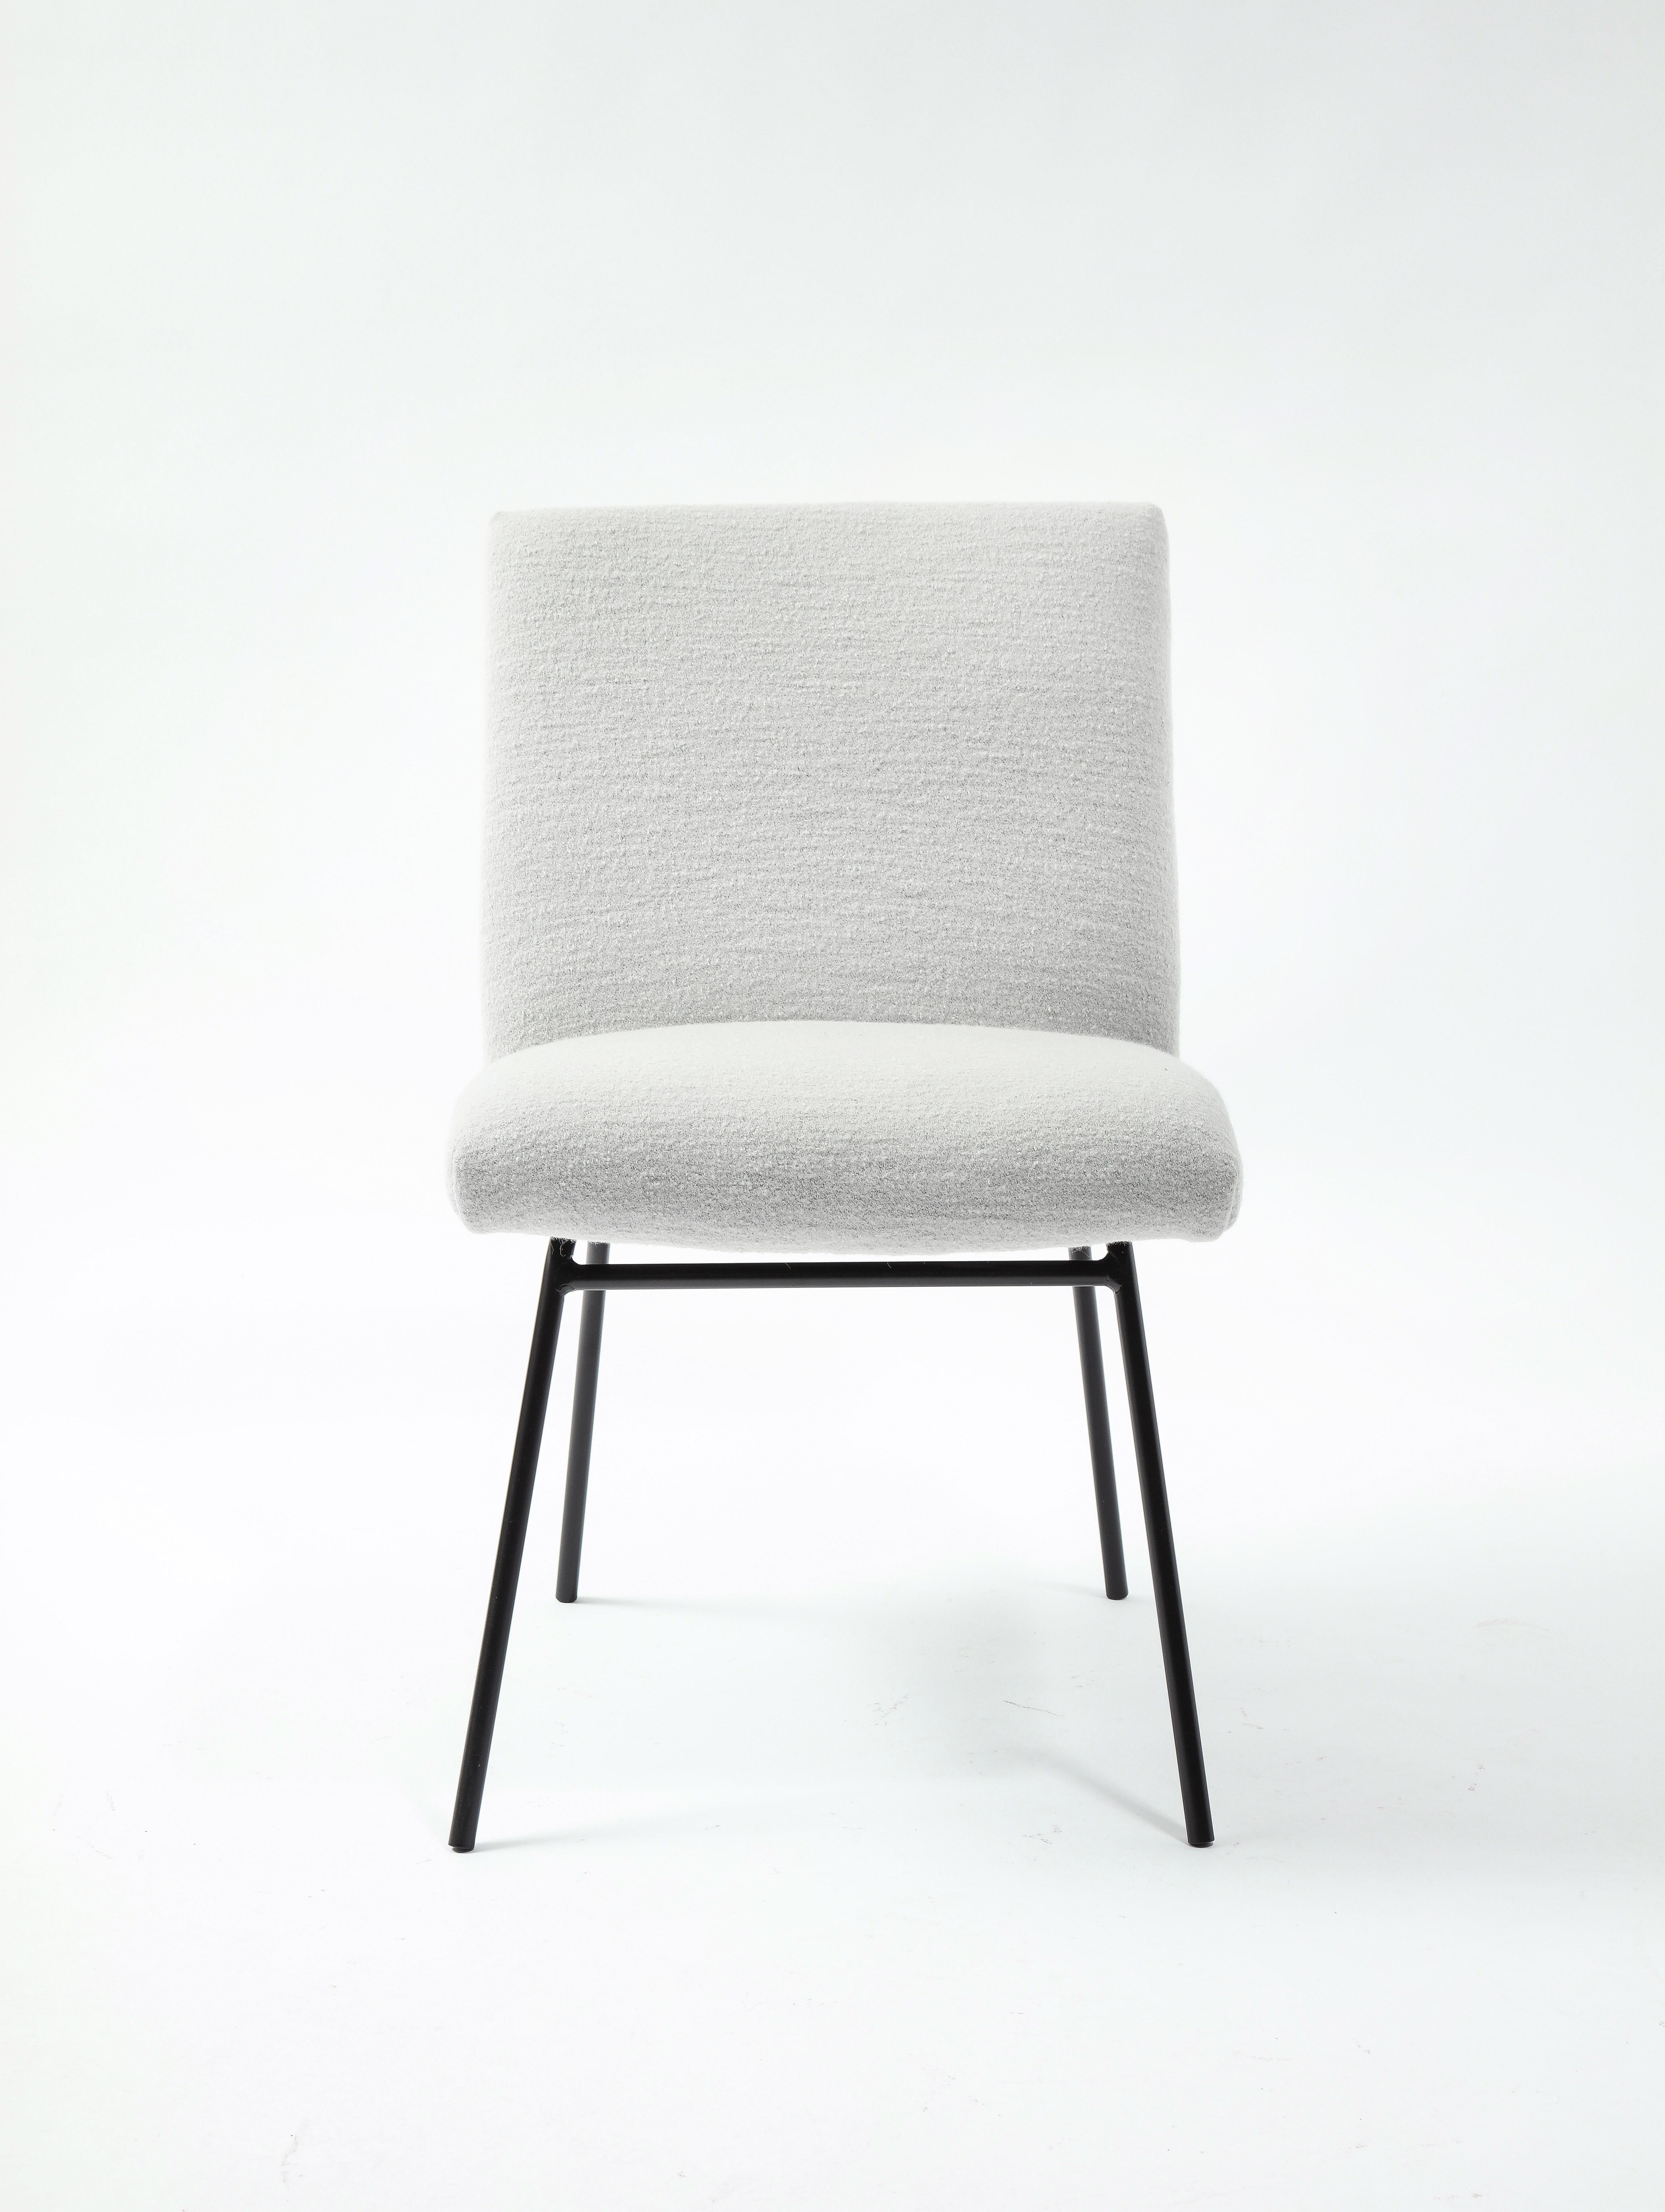 Zwölf Esszimmerstühle von Pierre Paulin für Meuble TV, klassisches Design aus der Mitte des Jahrhunderts und großer Komfort. Nur ein Stuhl ist gepolstert, fragen Sie uns nach dem COM-Service.